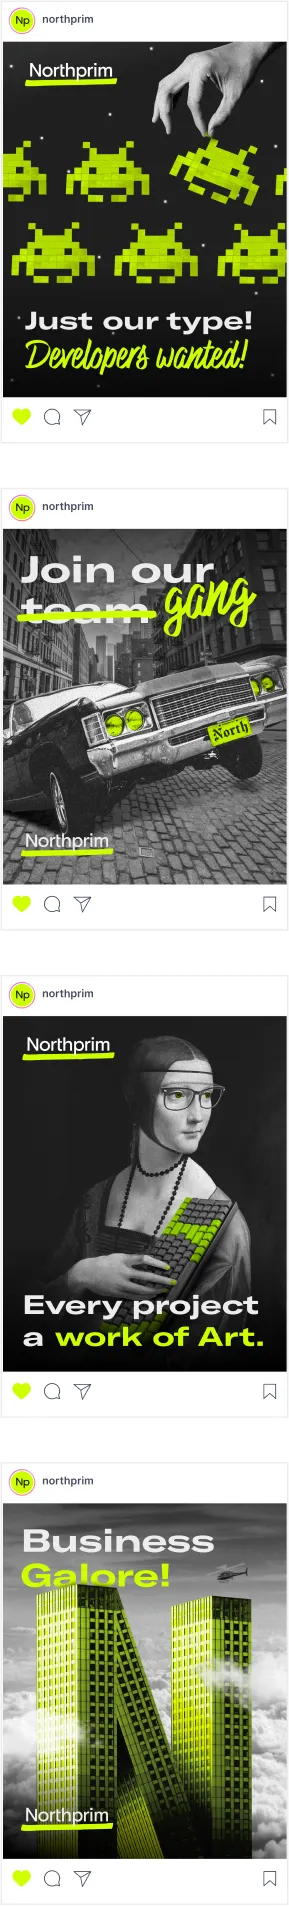 instagram feed northprim slide